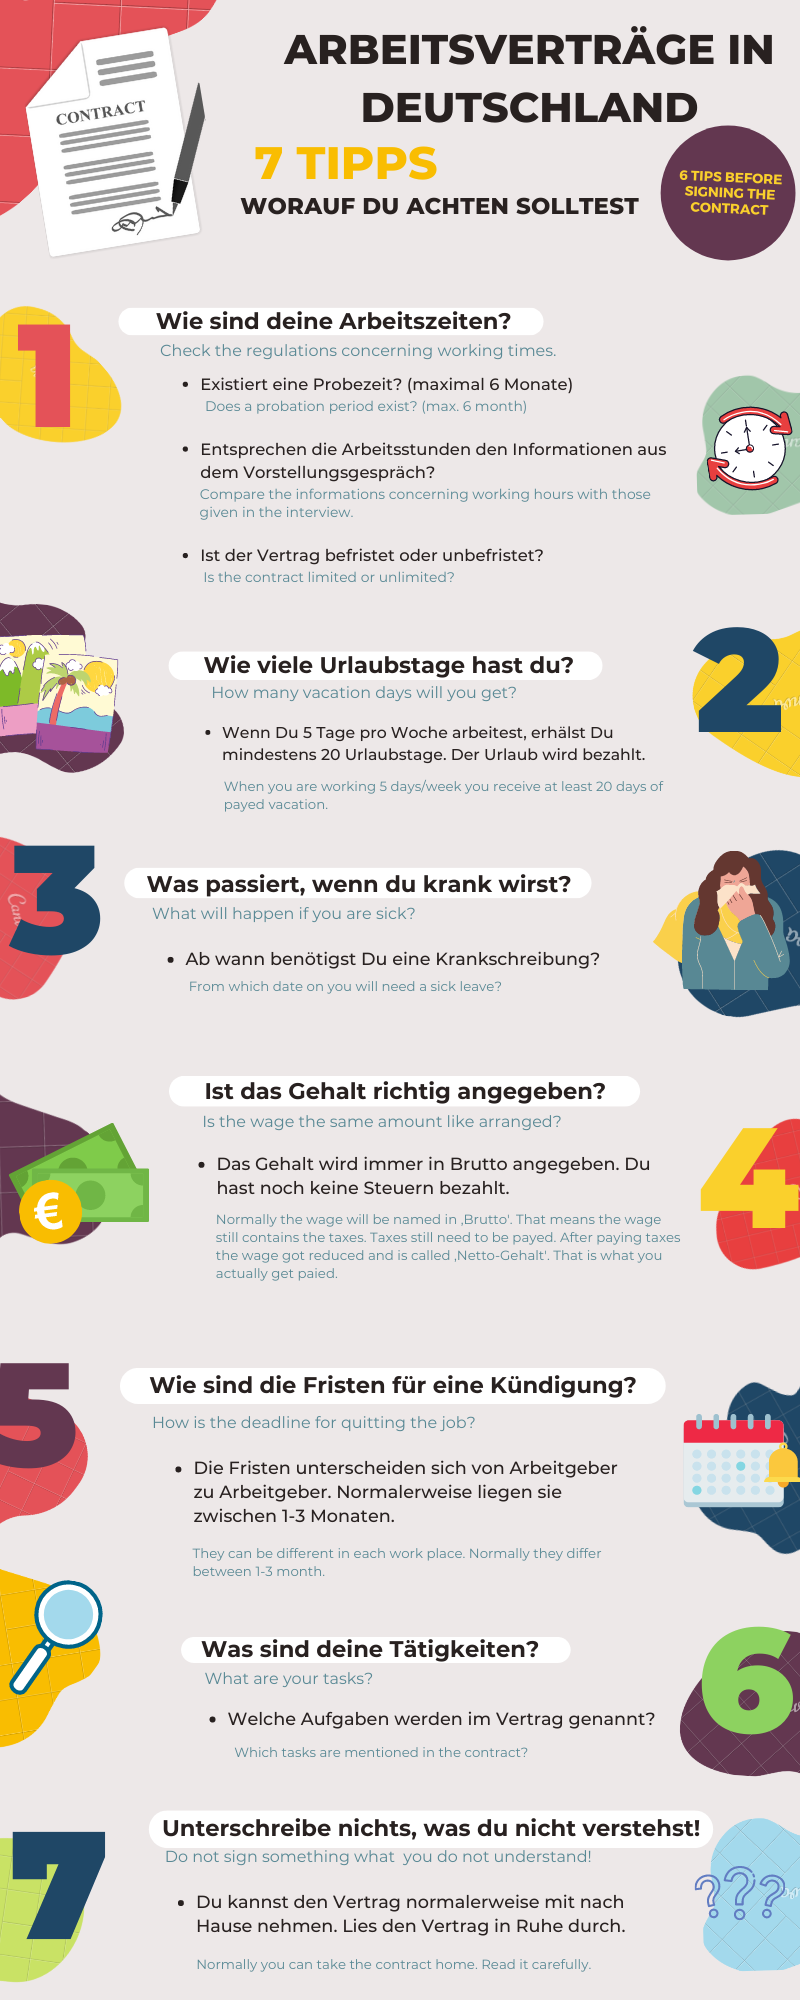 Arbeitsverträge in Deutschland - 7 Tipps 